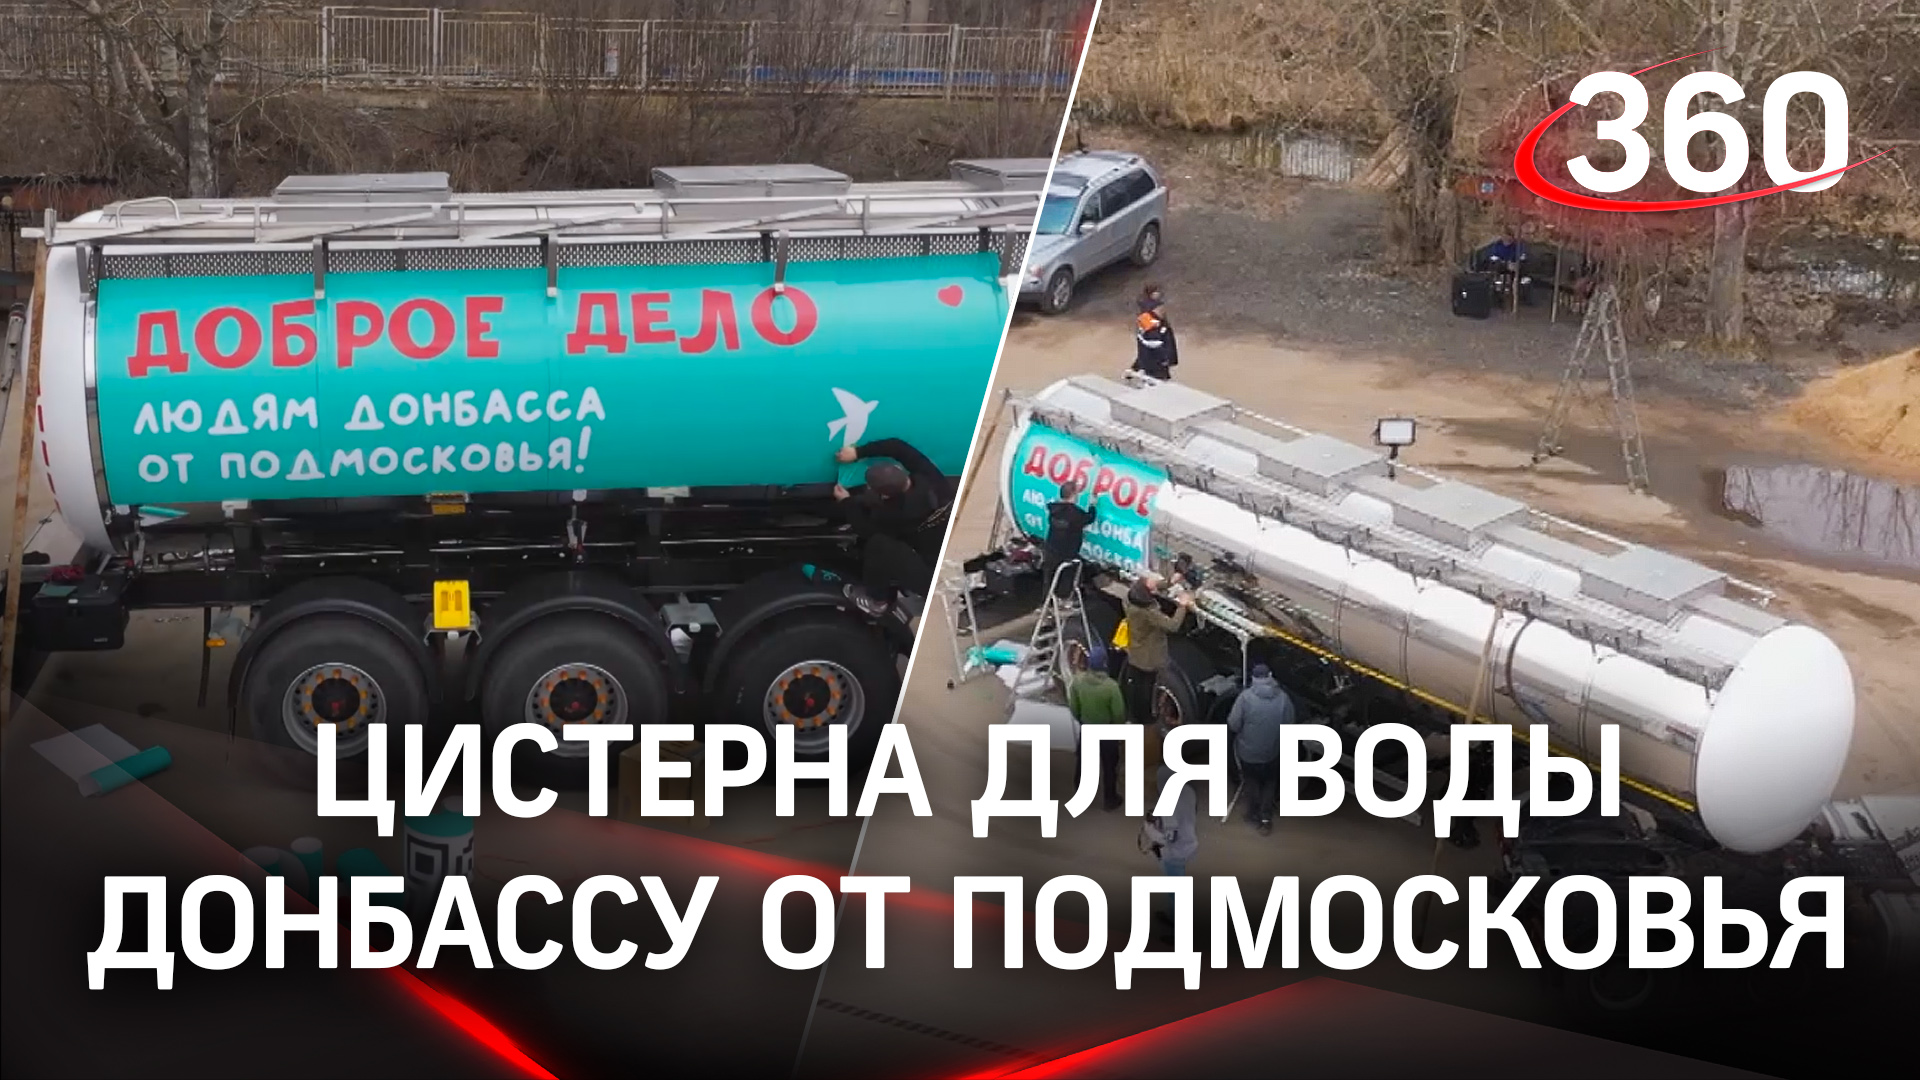 Водовоз и трубы для восстановления водоснабжения отправили на Донбасс из Подмосковья